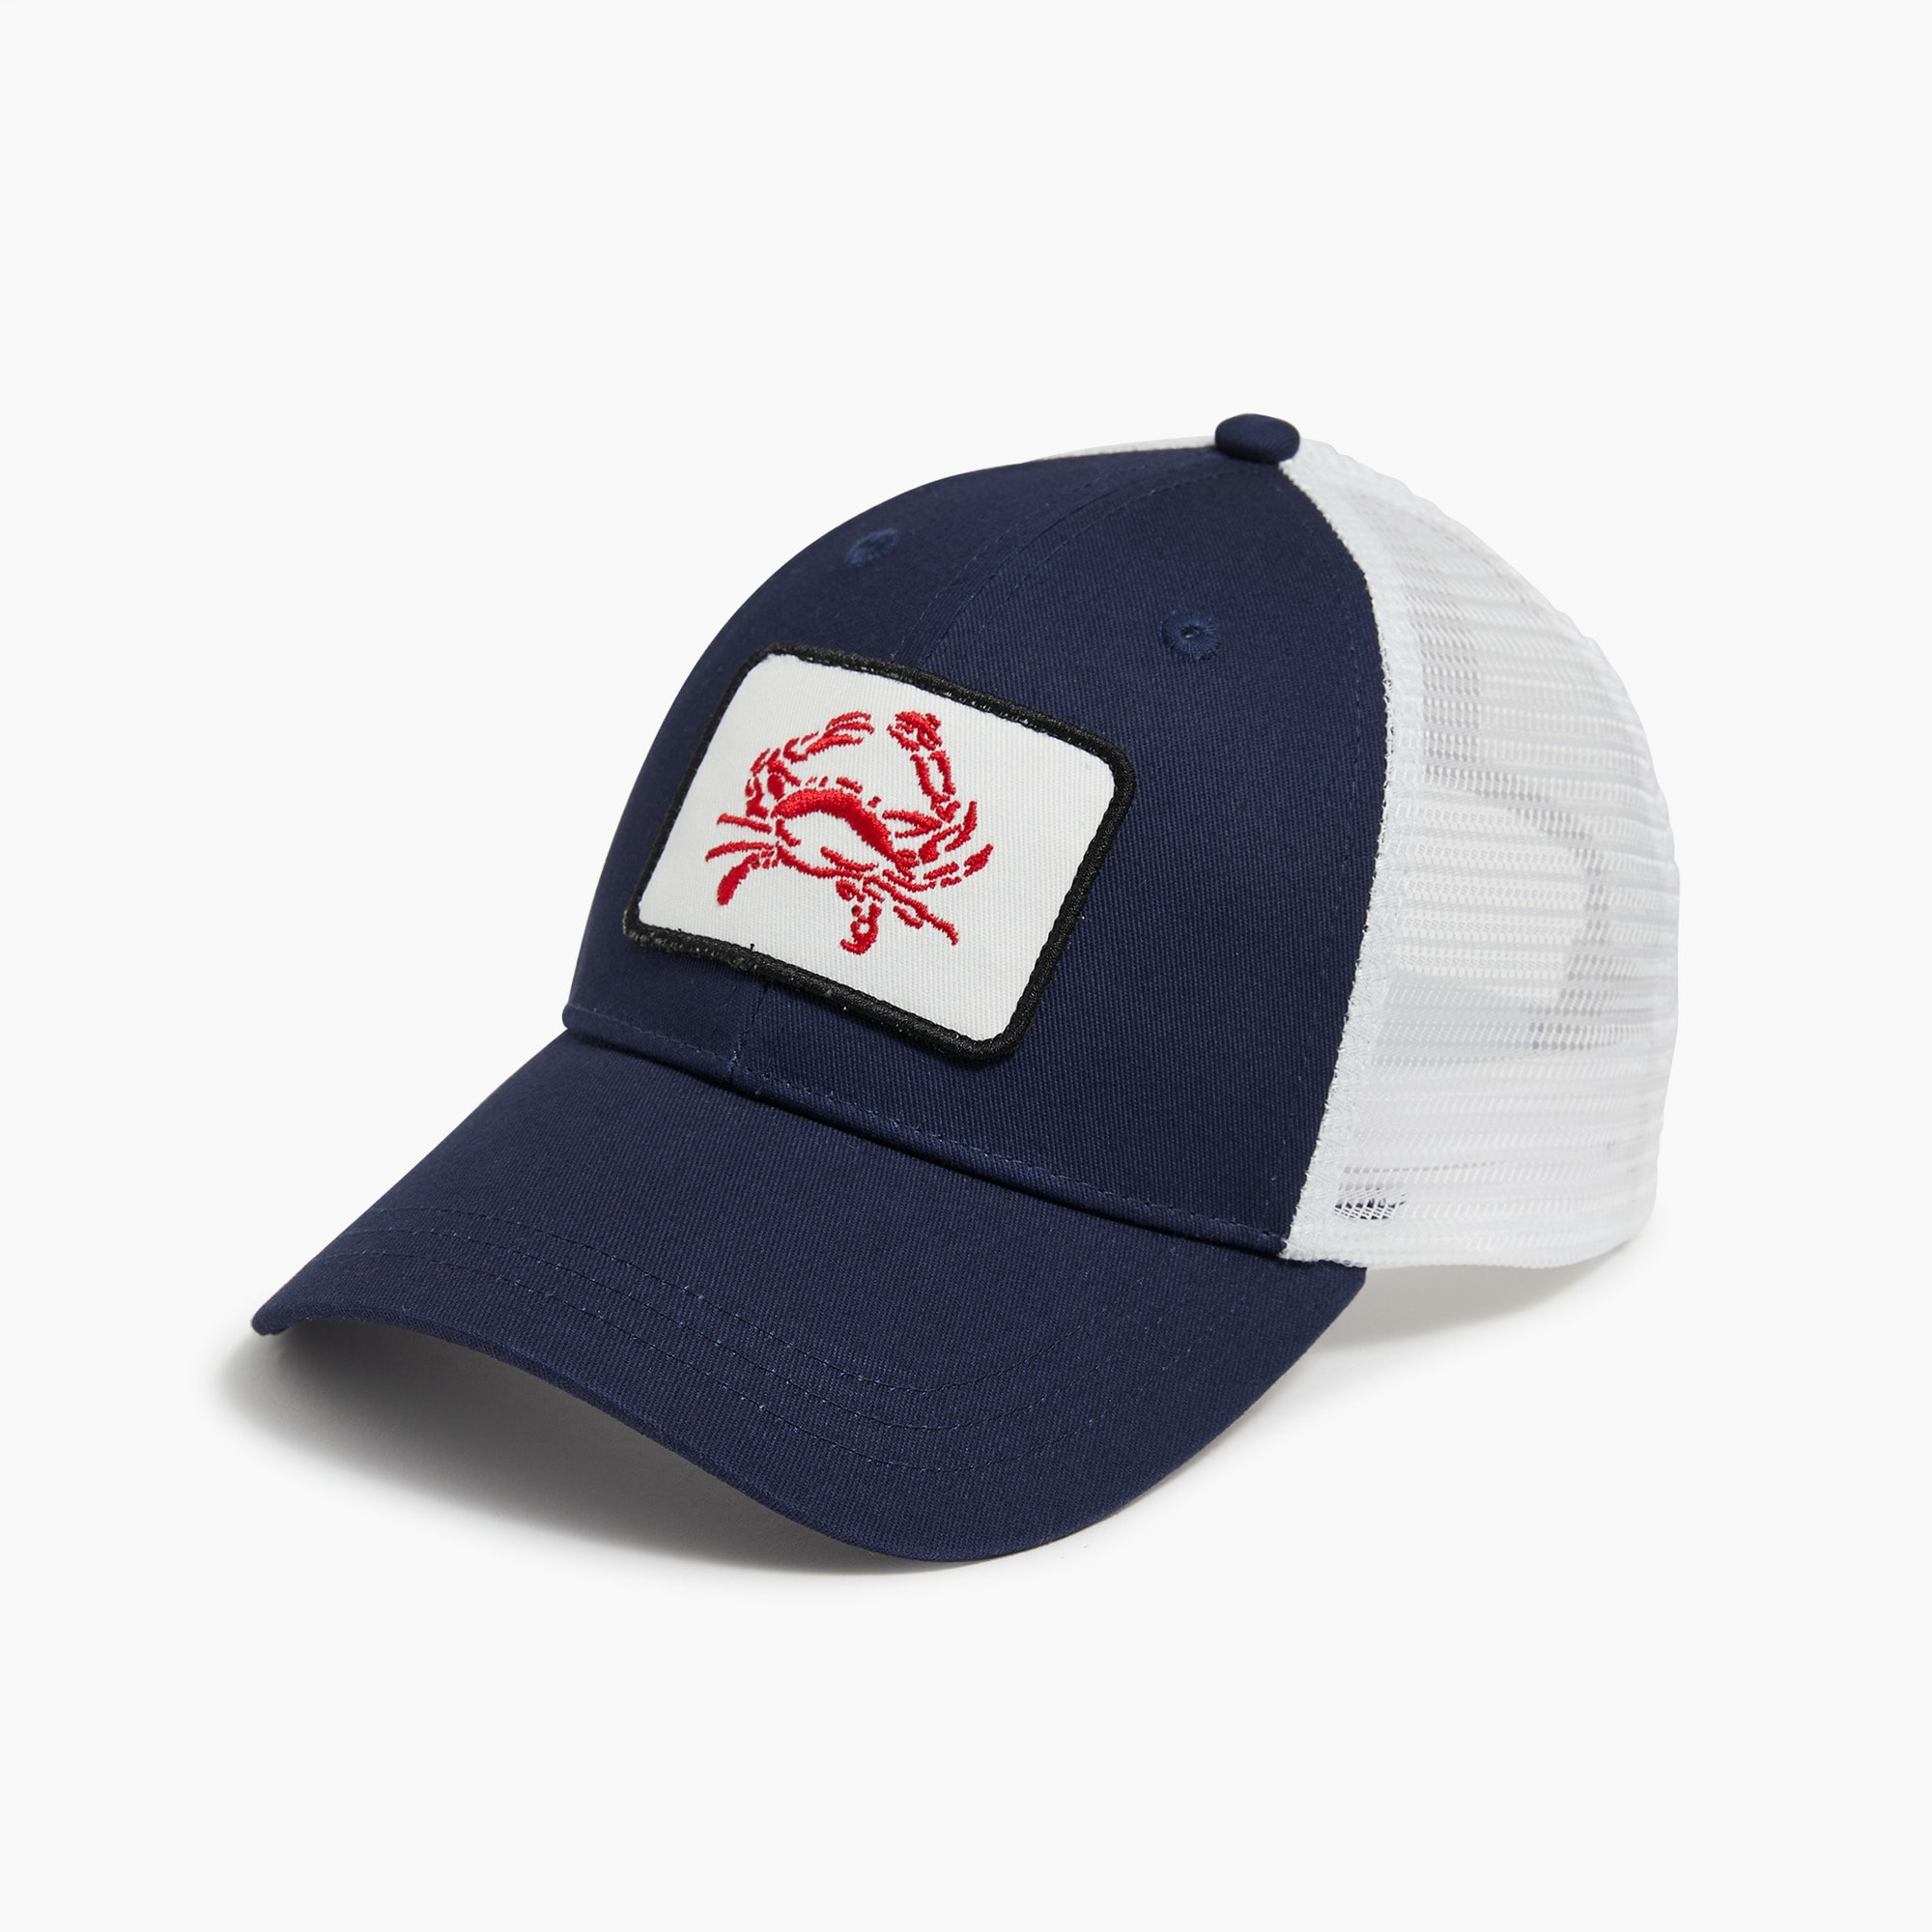 Jcrew Embroidered trucker hat